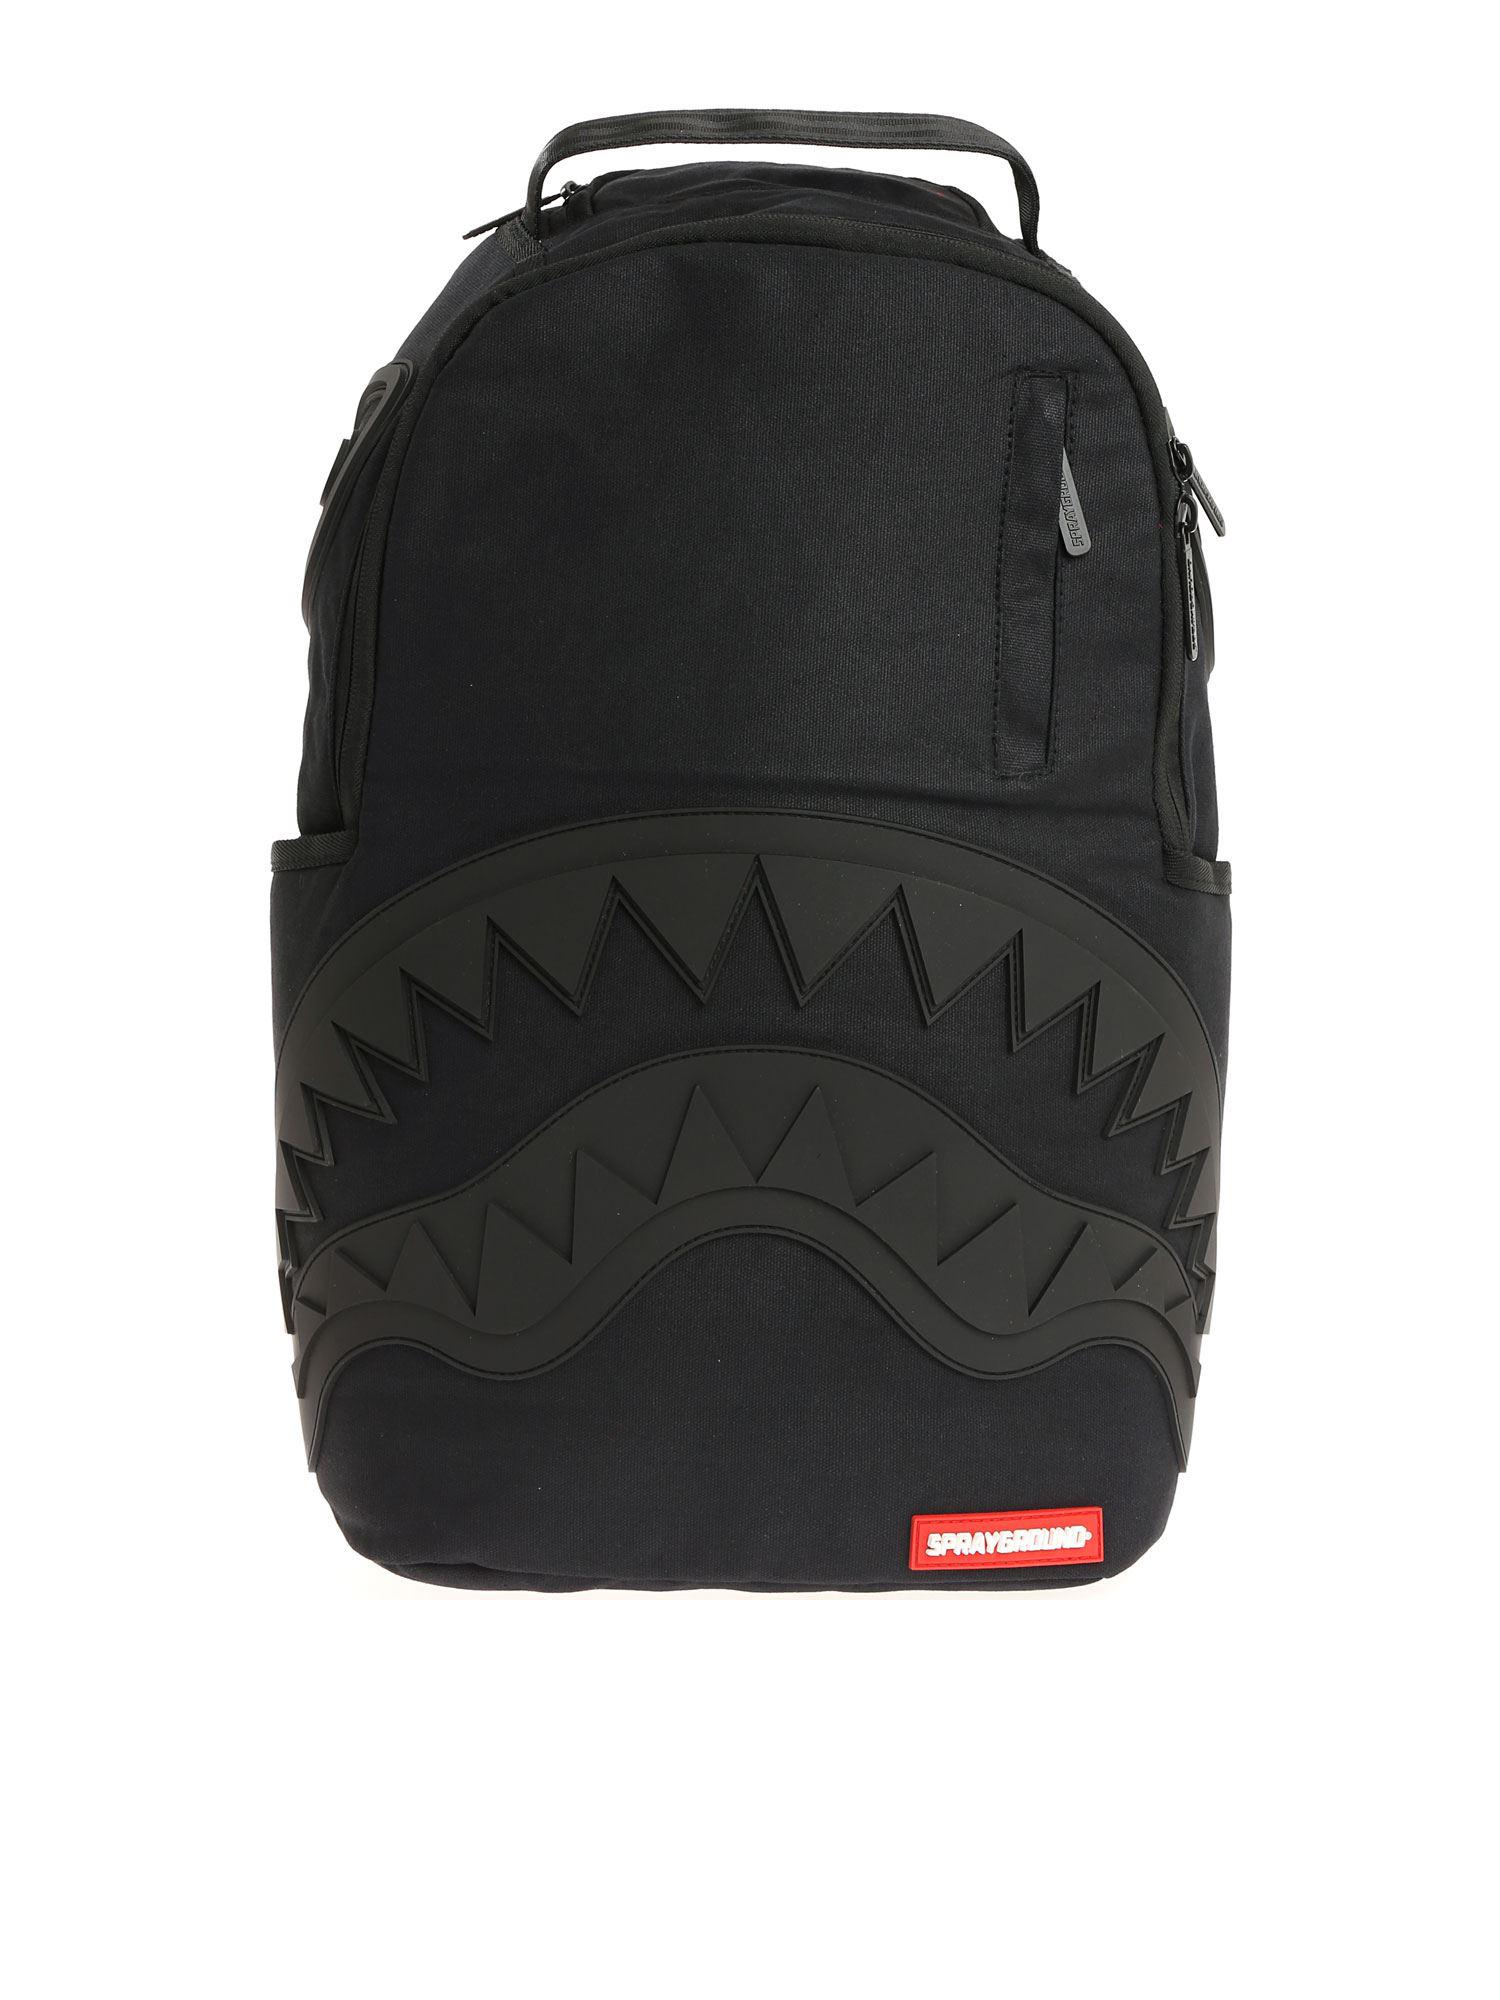 Sprayground Ghost Rubber Shark Black Backpack for Men - Lyst